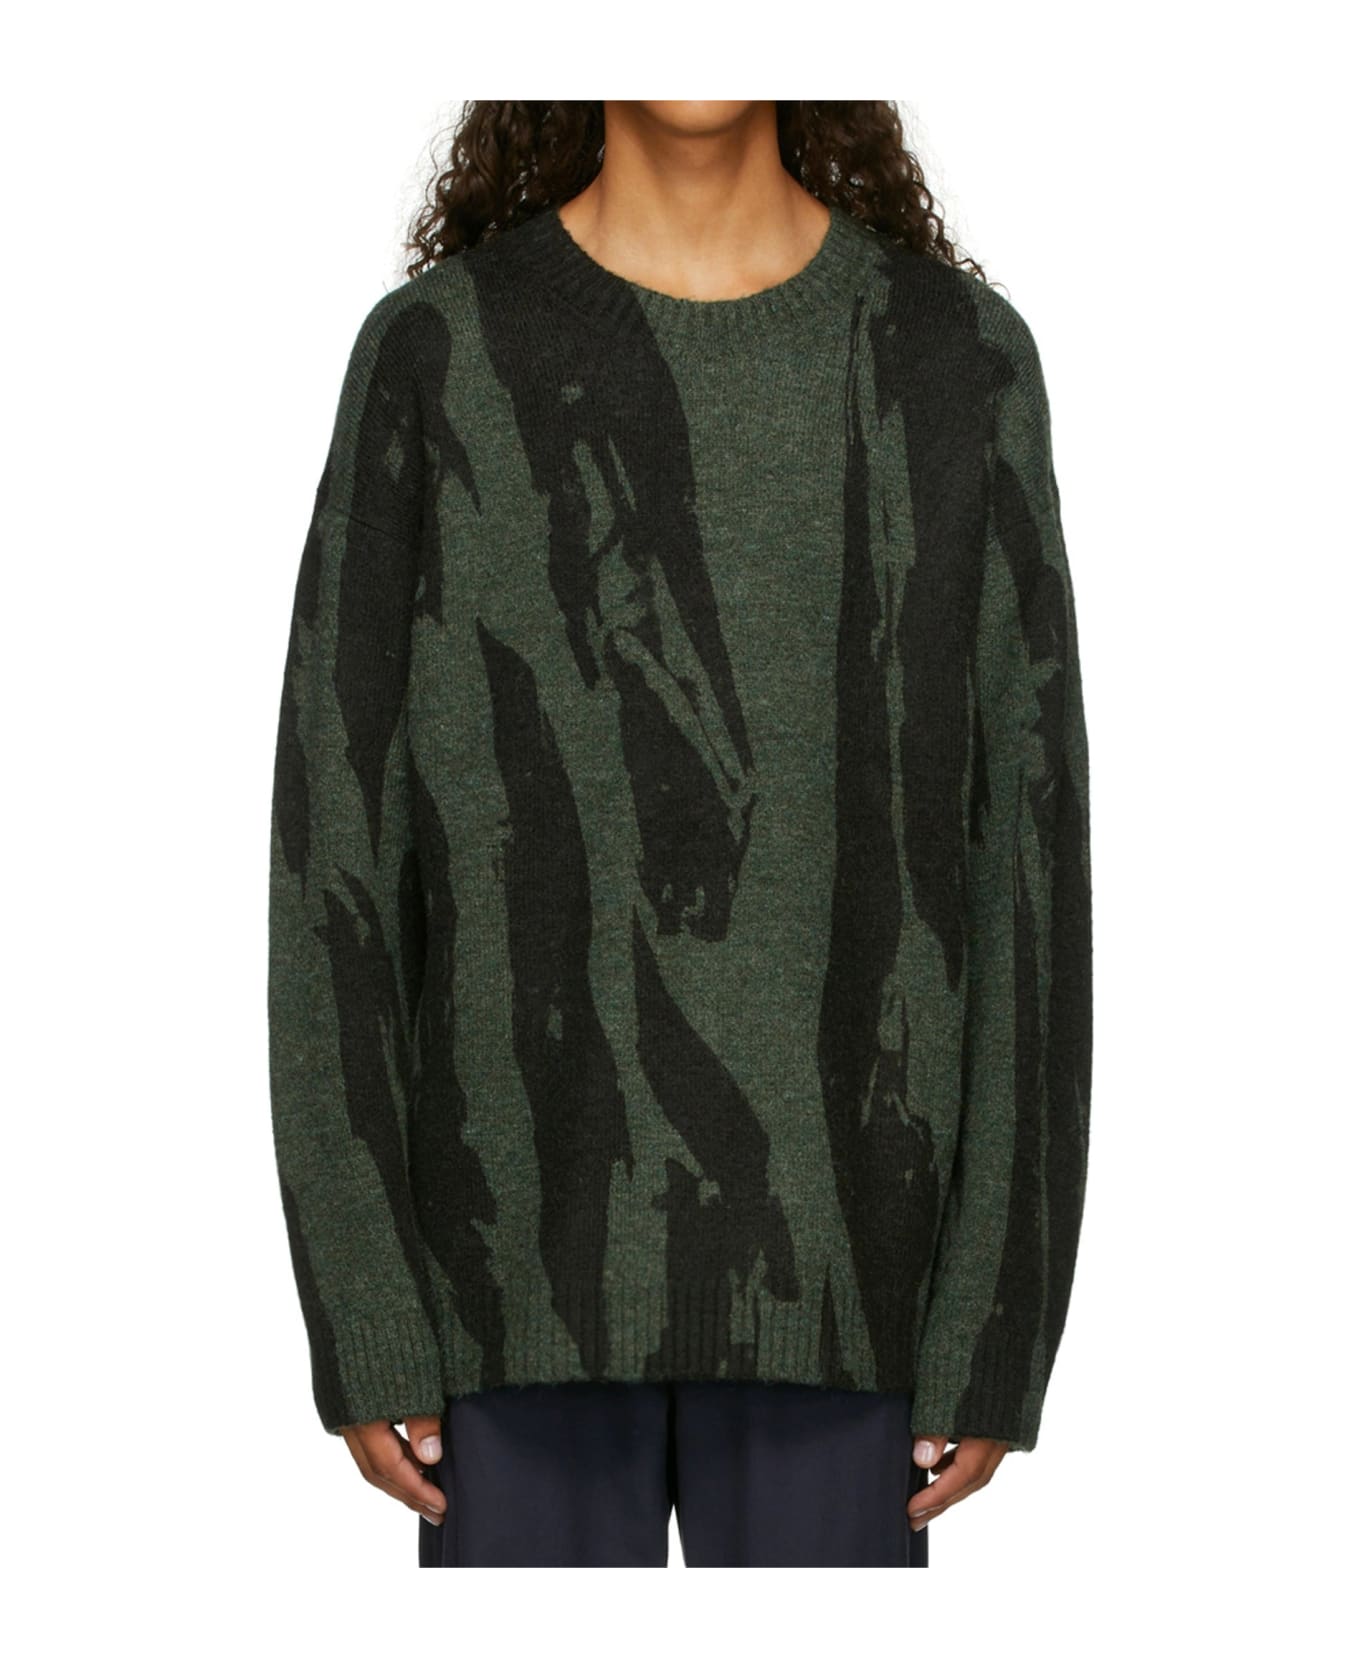 Kenzo Pleat Camo Sweater - Green